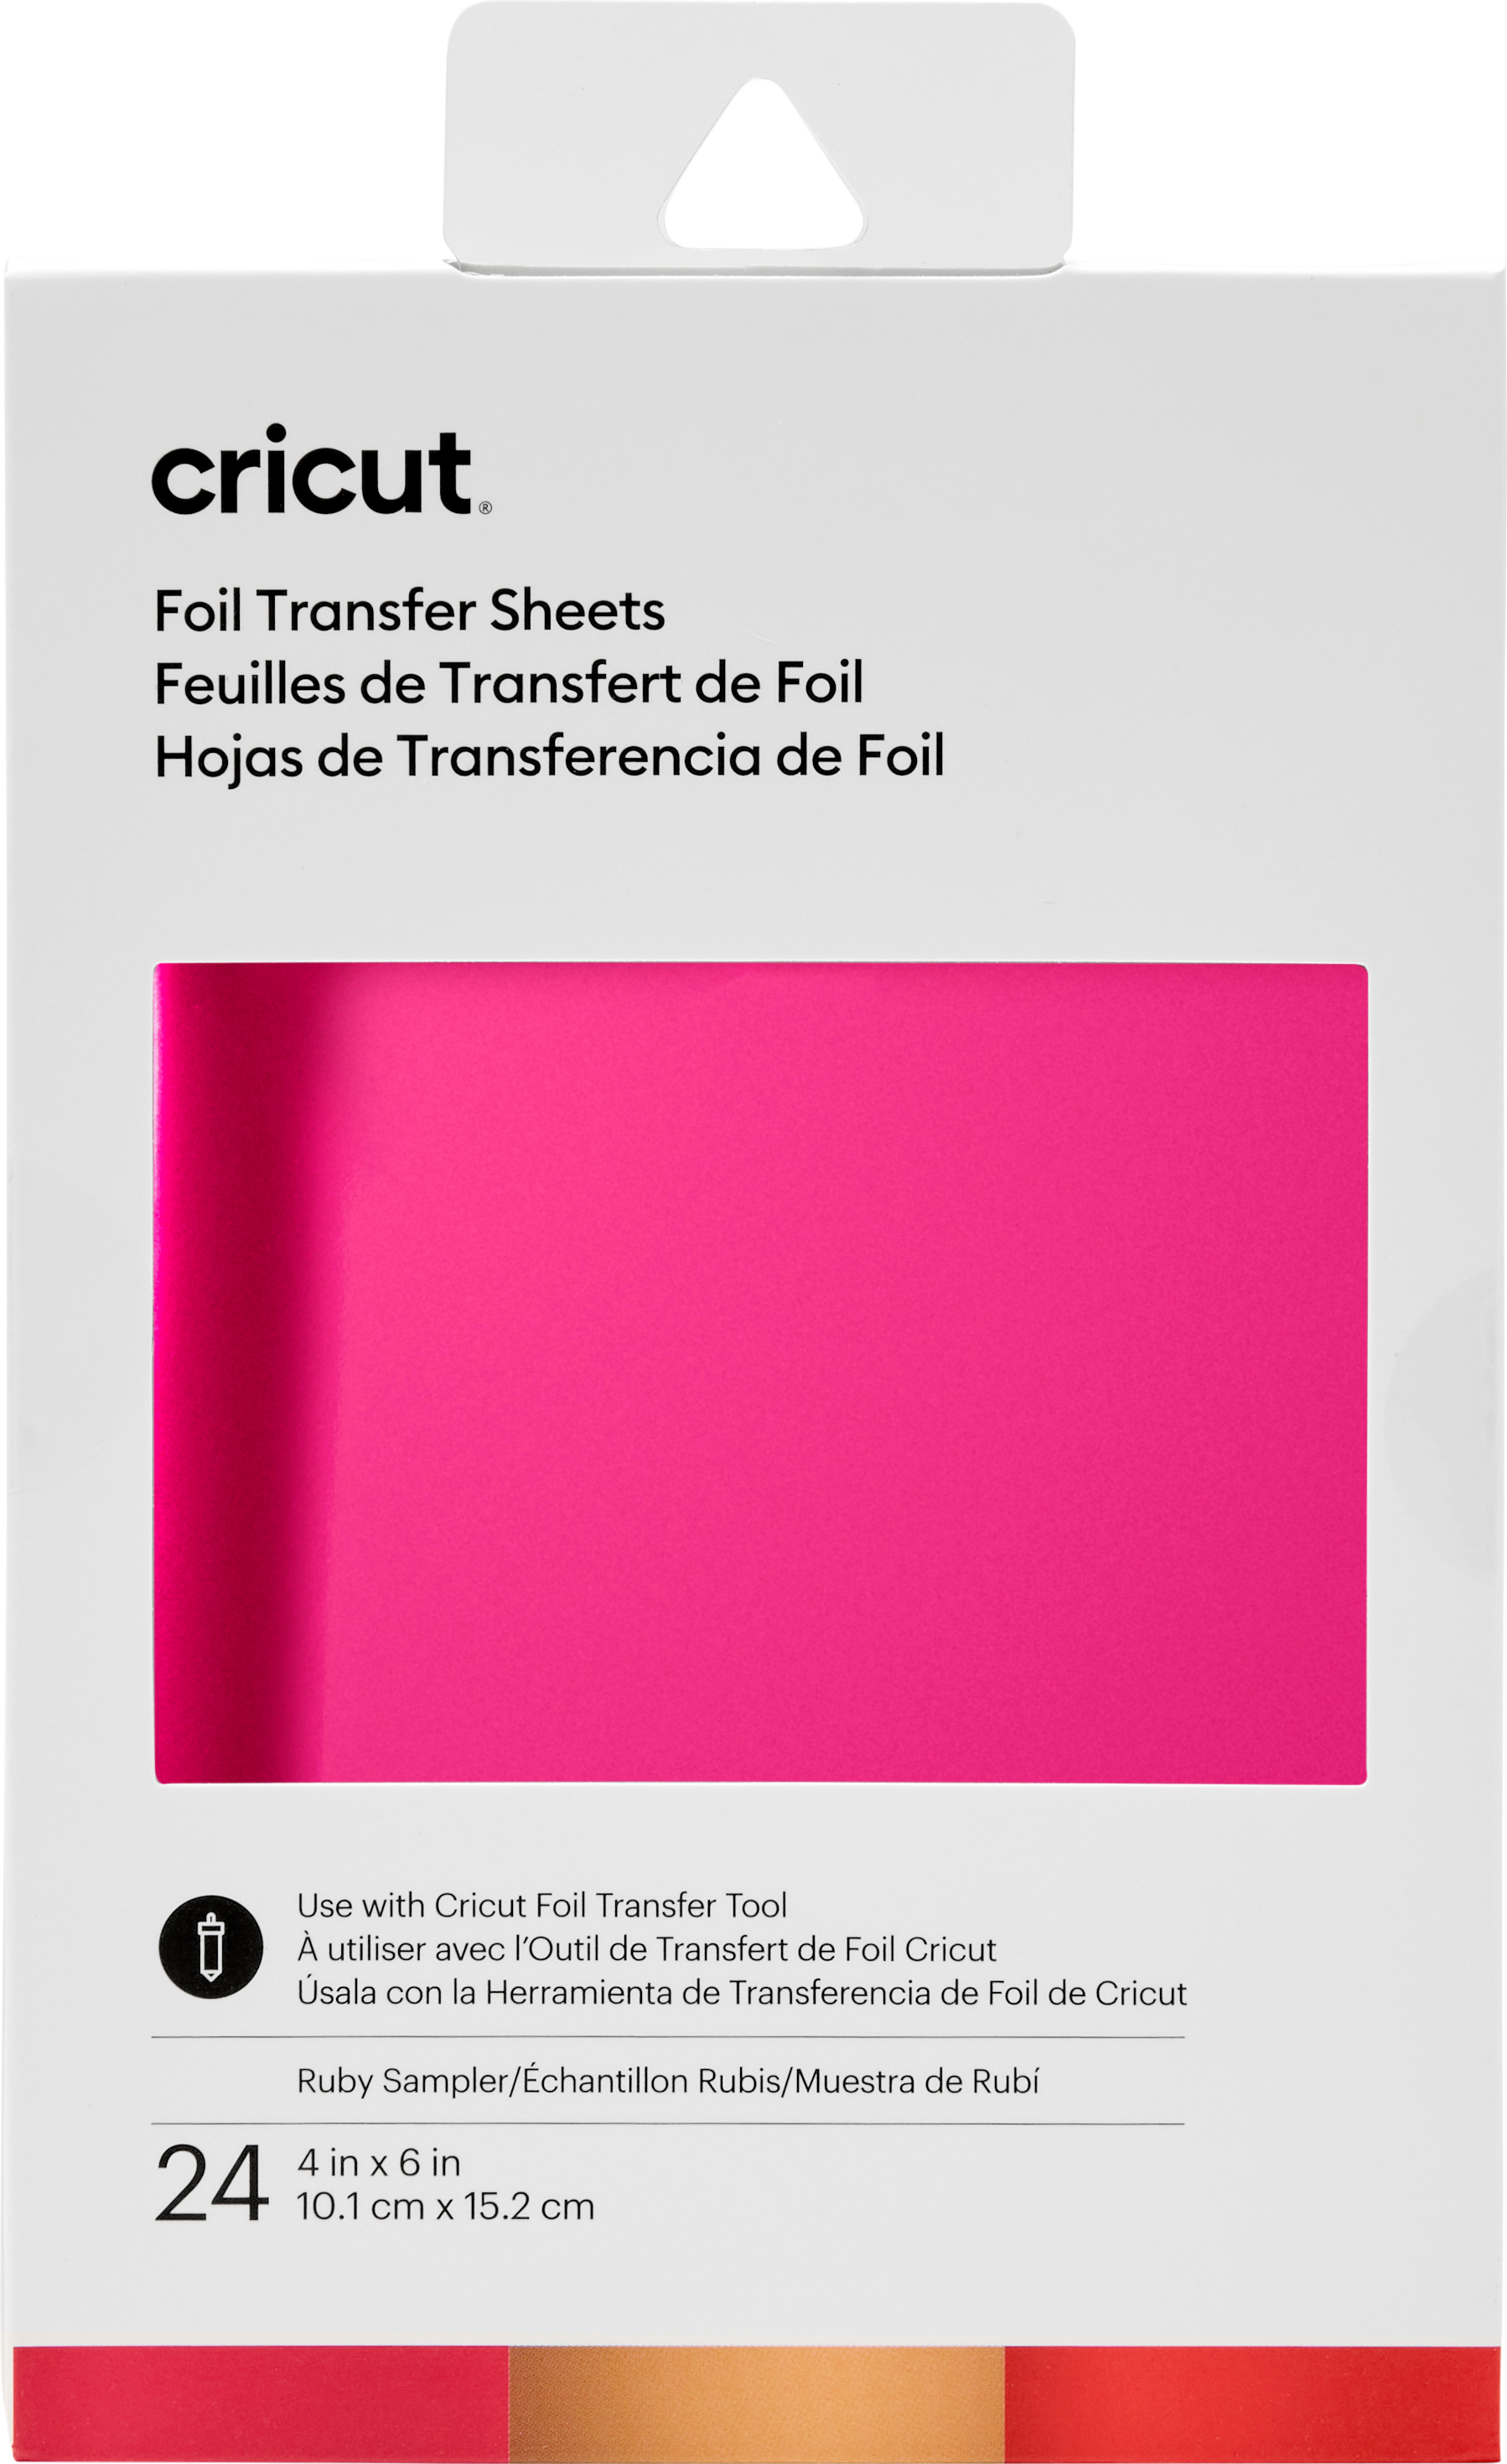 Feuilles de transfert Cricut « Foil Transfer - Sheets Sampler